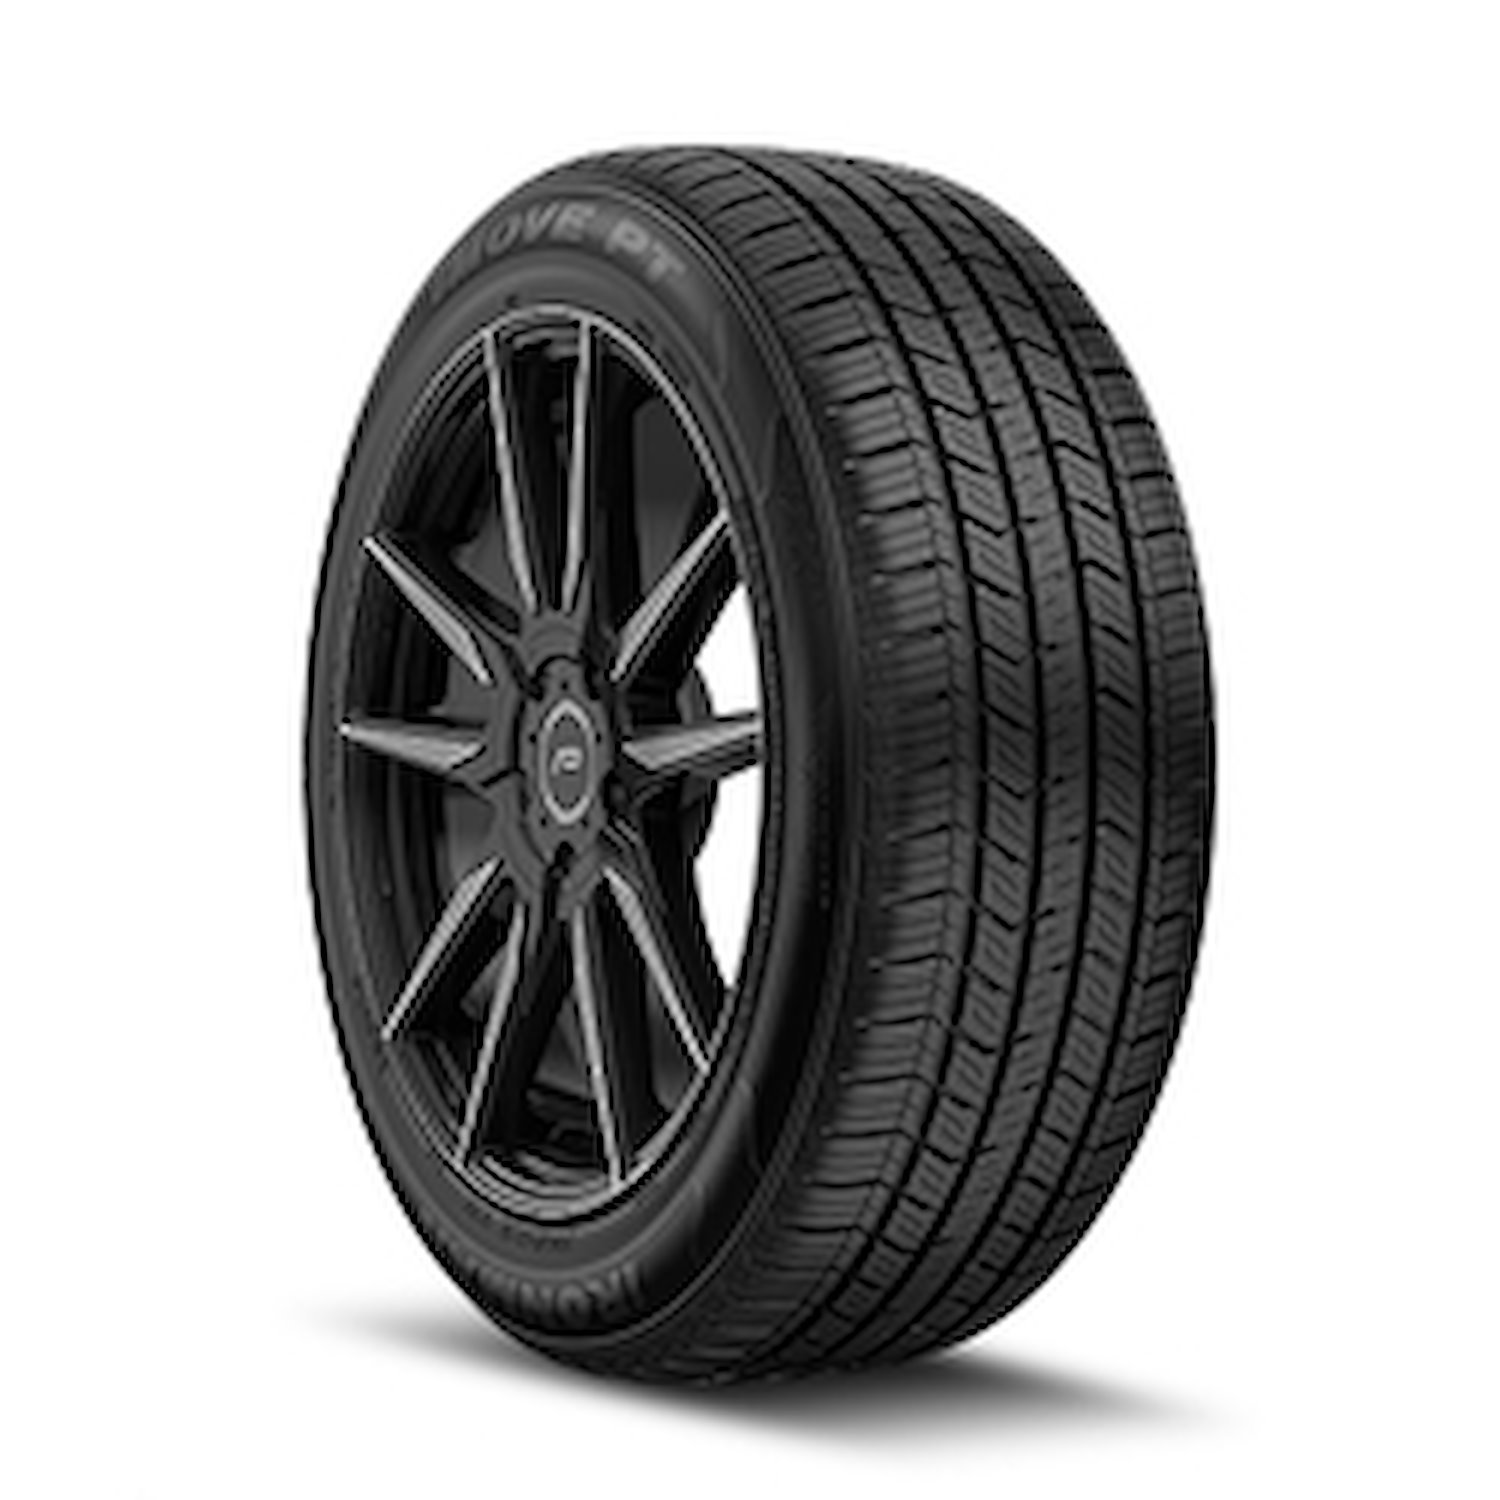 98449 iMOVE PT Tire, 195/60R14, 86H